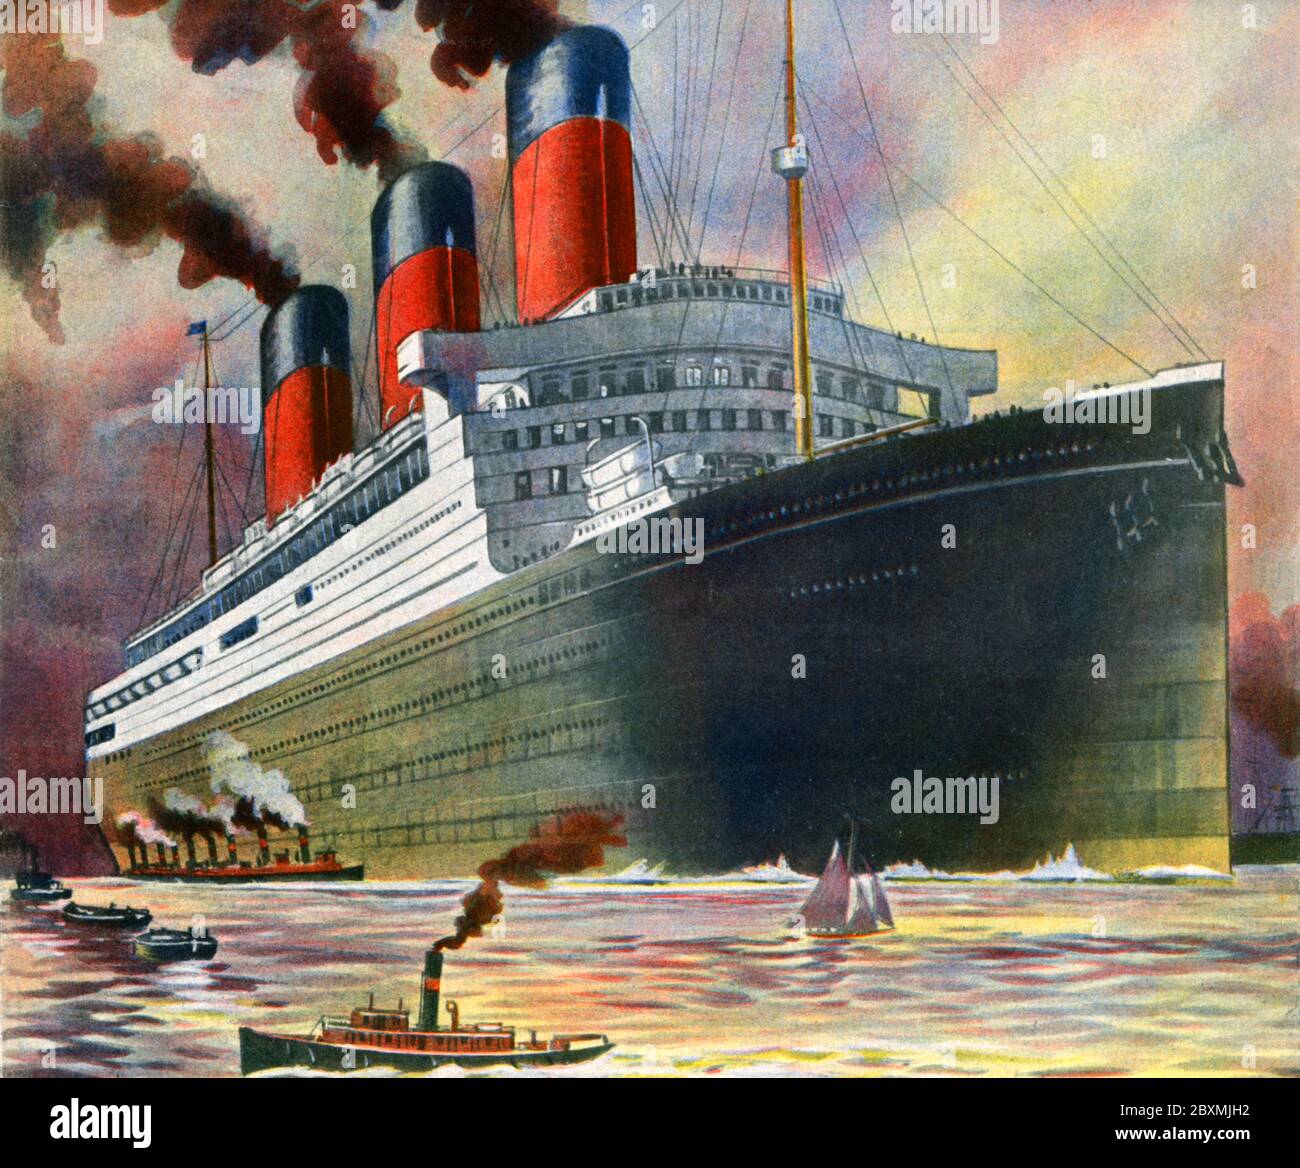 RMS Majestic. Un navire de passerelle construit en 1914 et a été initialement nommé SS Bismarck. Il faisait 291 mètres de long et il a fallu 3500 passants. White Star Line a fait traverser l'atlantique en cinq jours, 18 heures, 8 minutes à une vitesse de croisière moyenne de 20,1 noeuds. Illustration de 1923 Banque D'Images